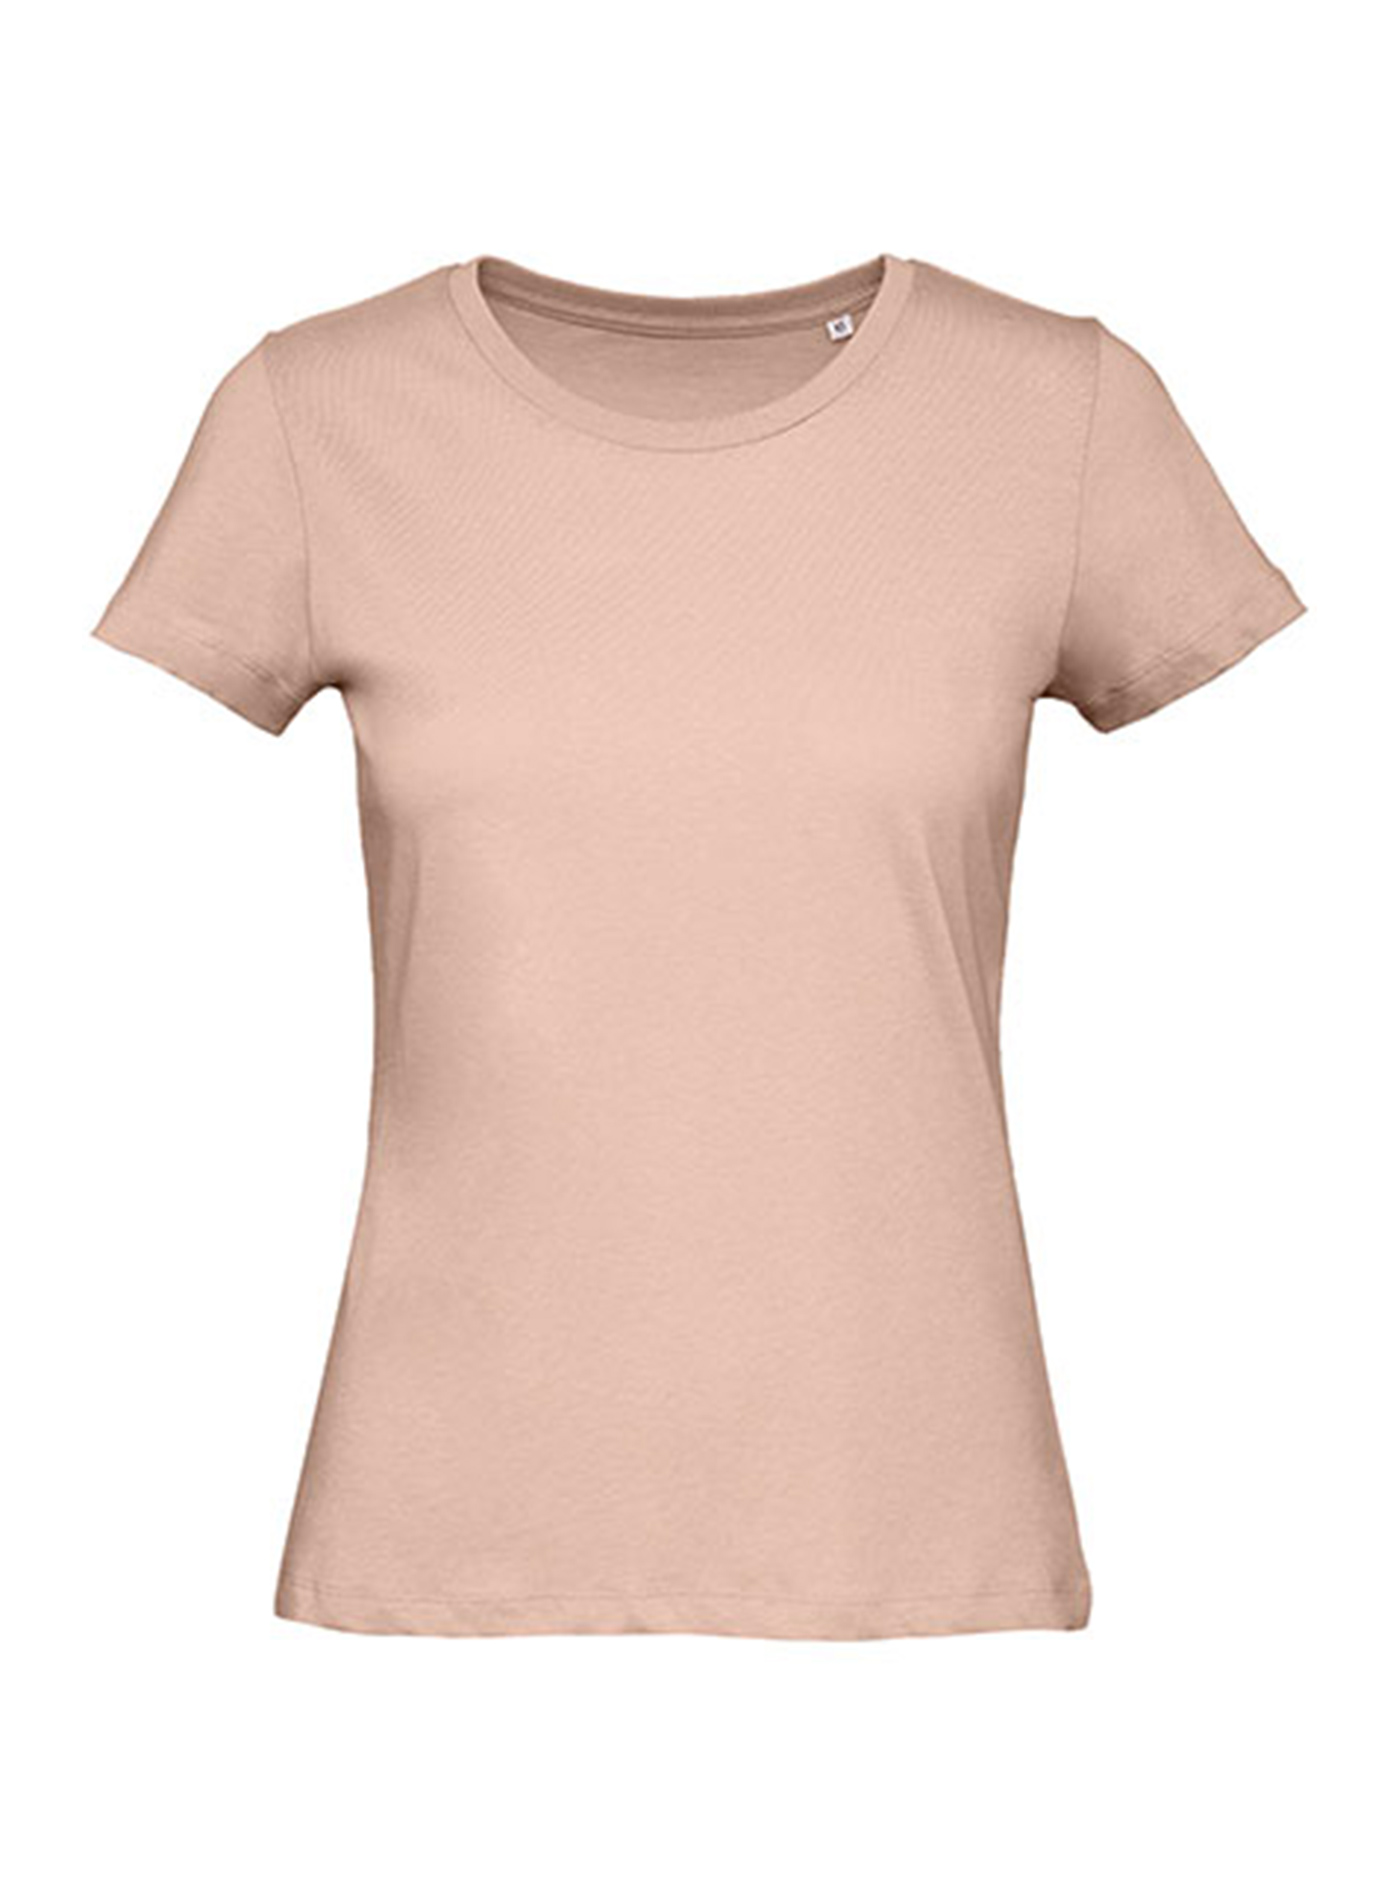 Dámské tričko B&C Collection Inspire - Bledě růžová XS